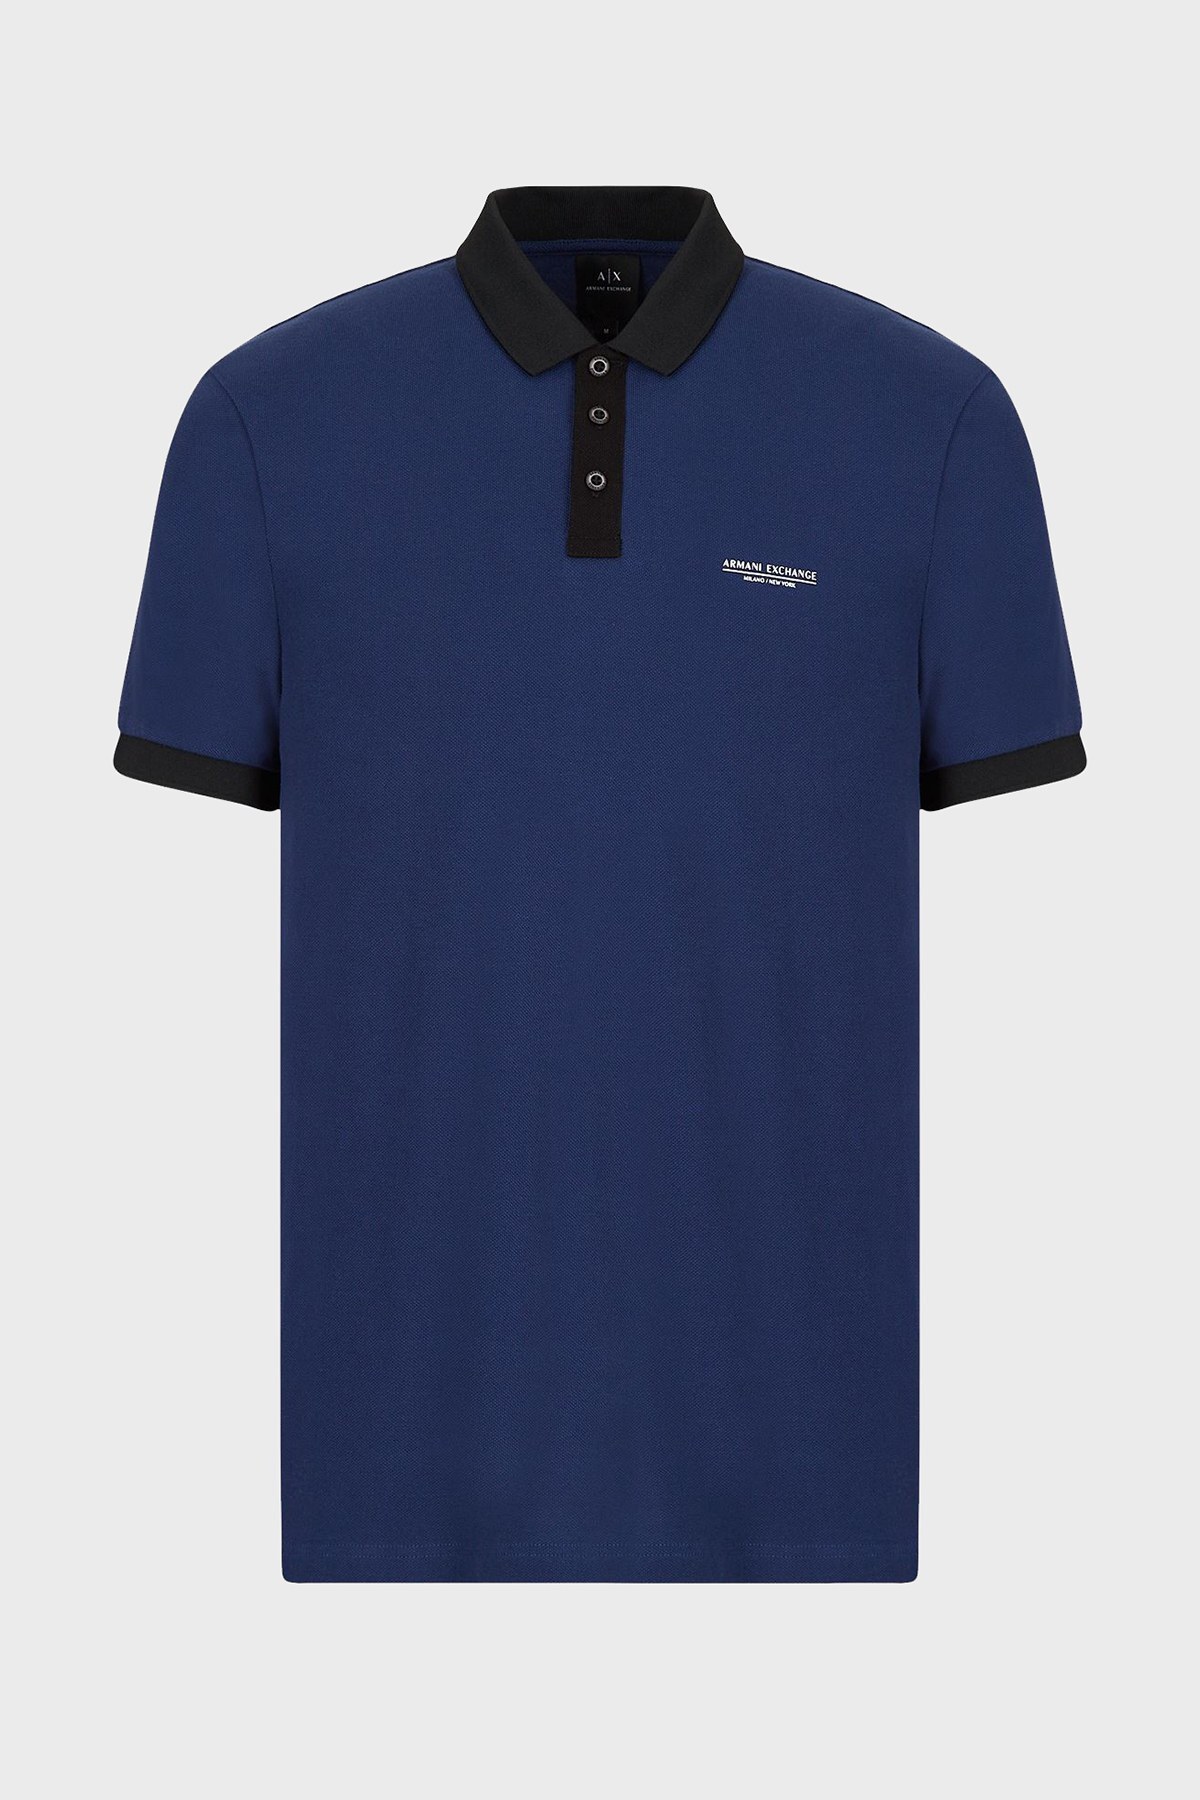 Armani Exchange Pamuklu Regular Fit Düğmeli T Shirt Erkek Polo 3LZFLC ZJM5Z 25CJ Mavi-Siyah